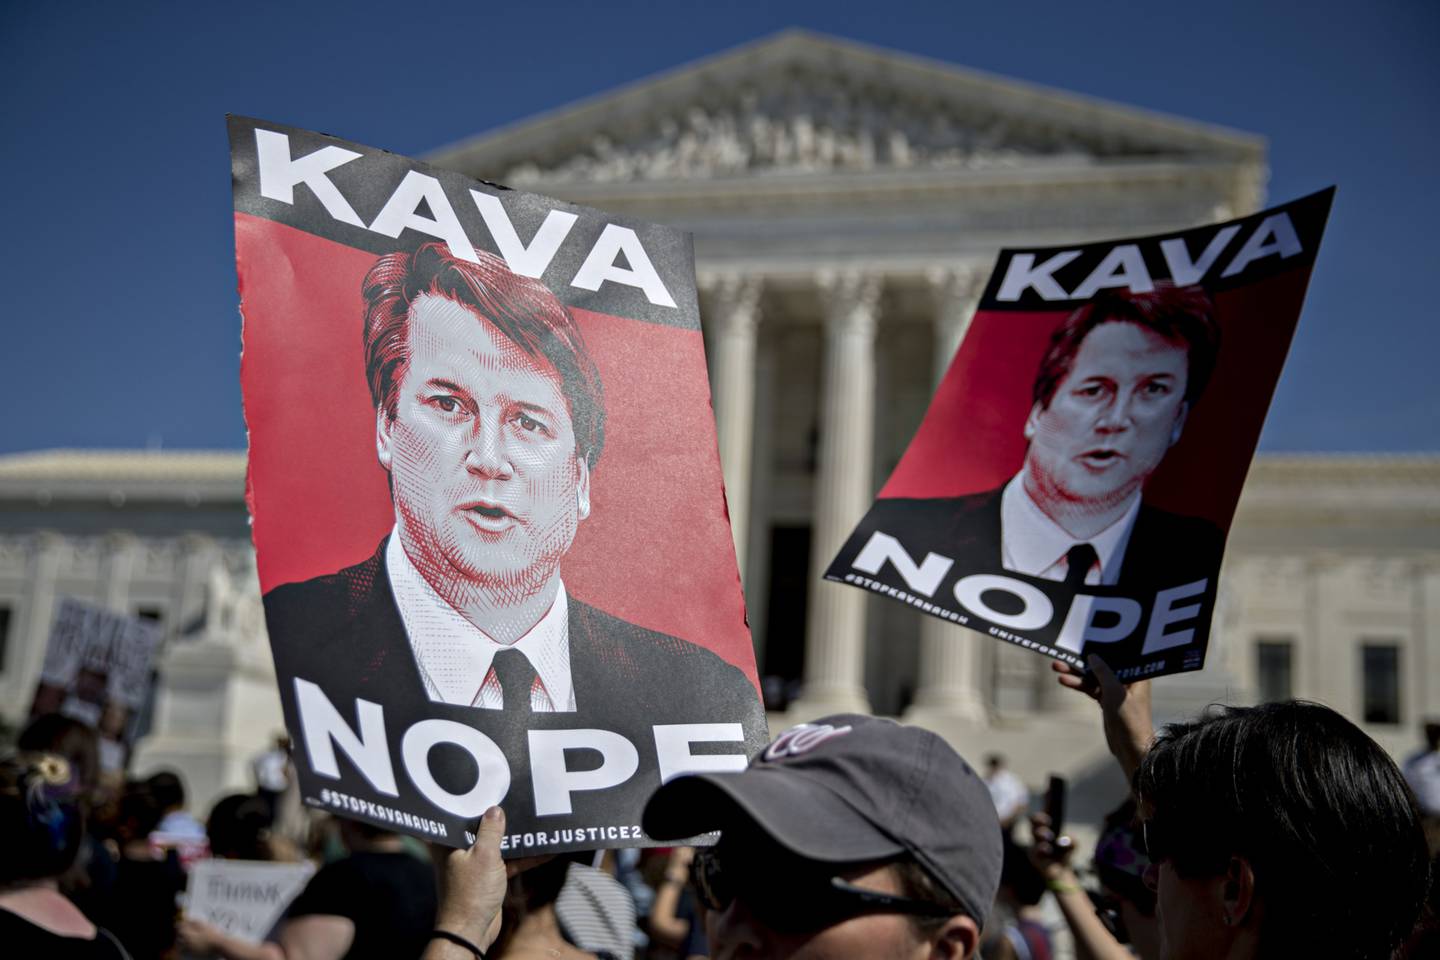 Manifestación de manifestantes contra la nominación de Kavanaugh al Tribunal Supremo en 2018. Fotógrafo: Andrew Harrer/Bloombergdfd